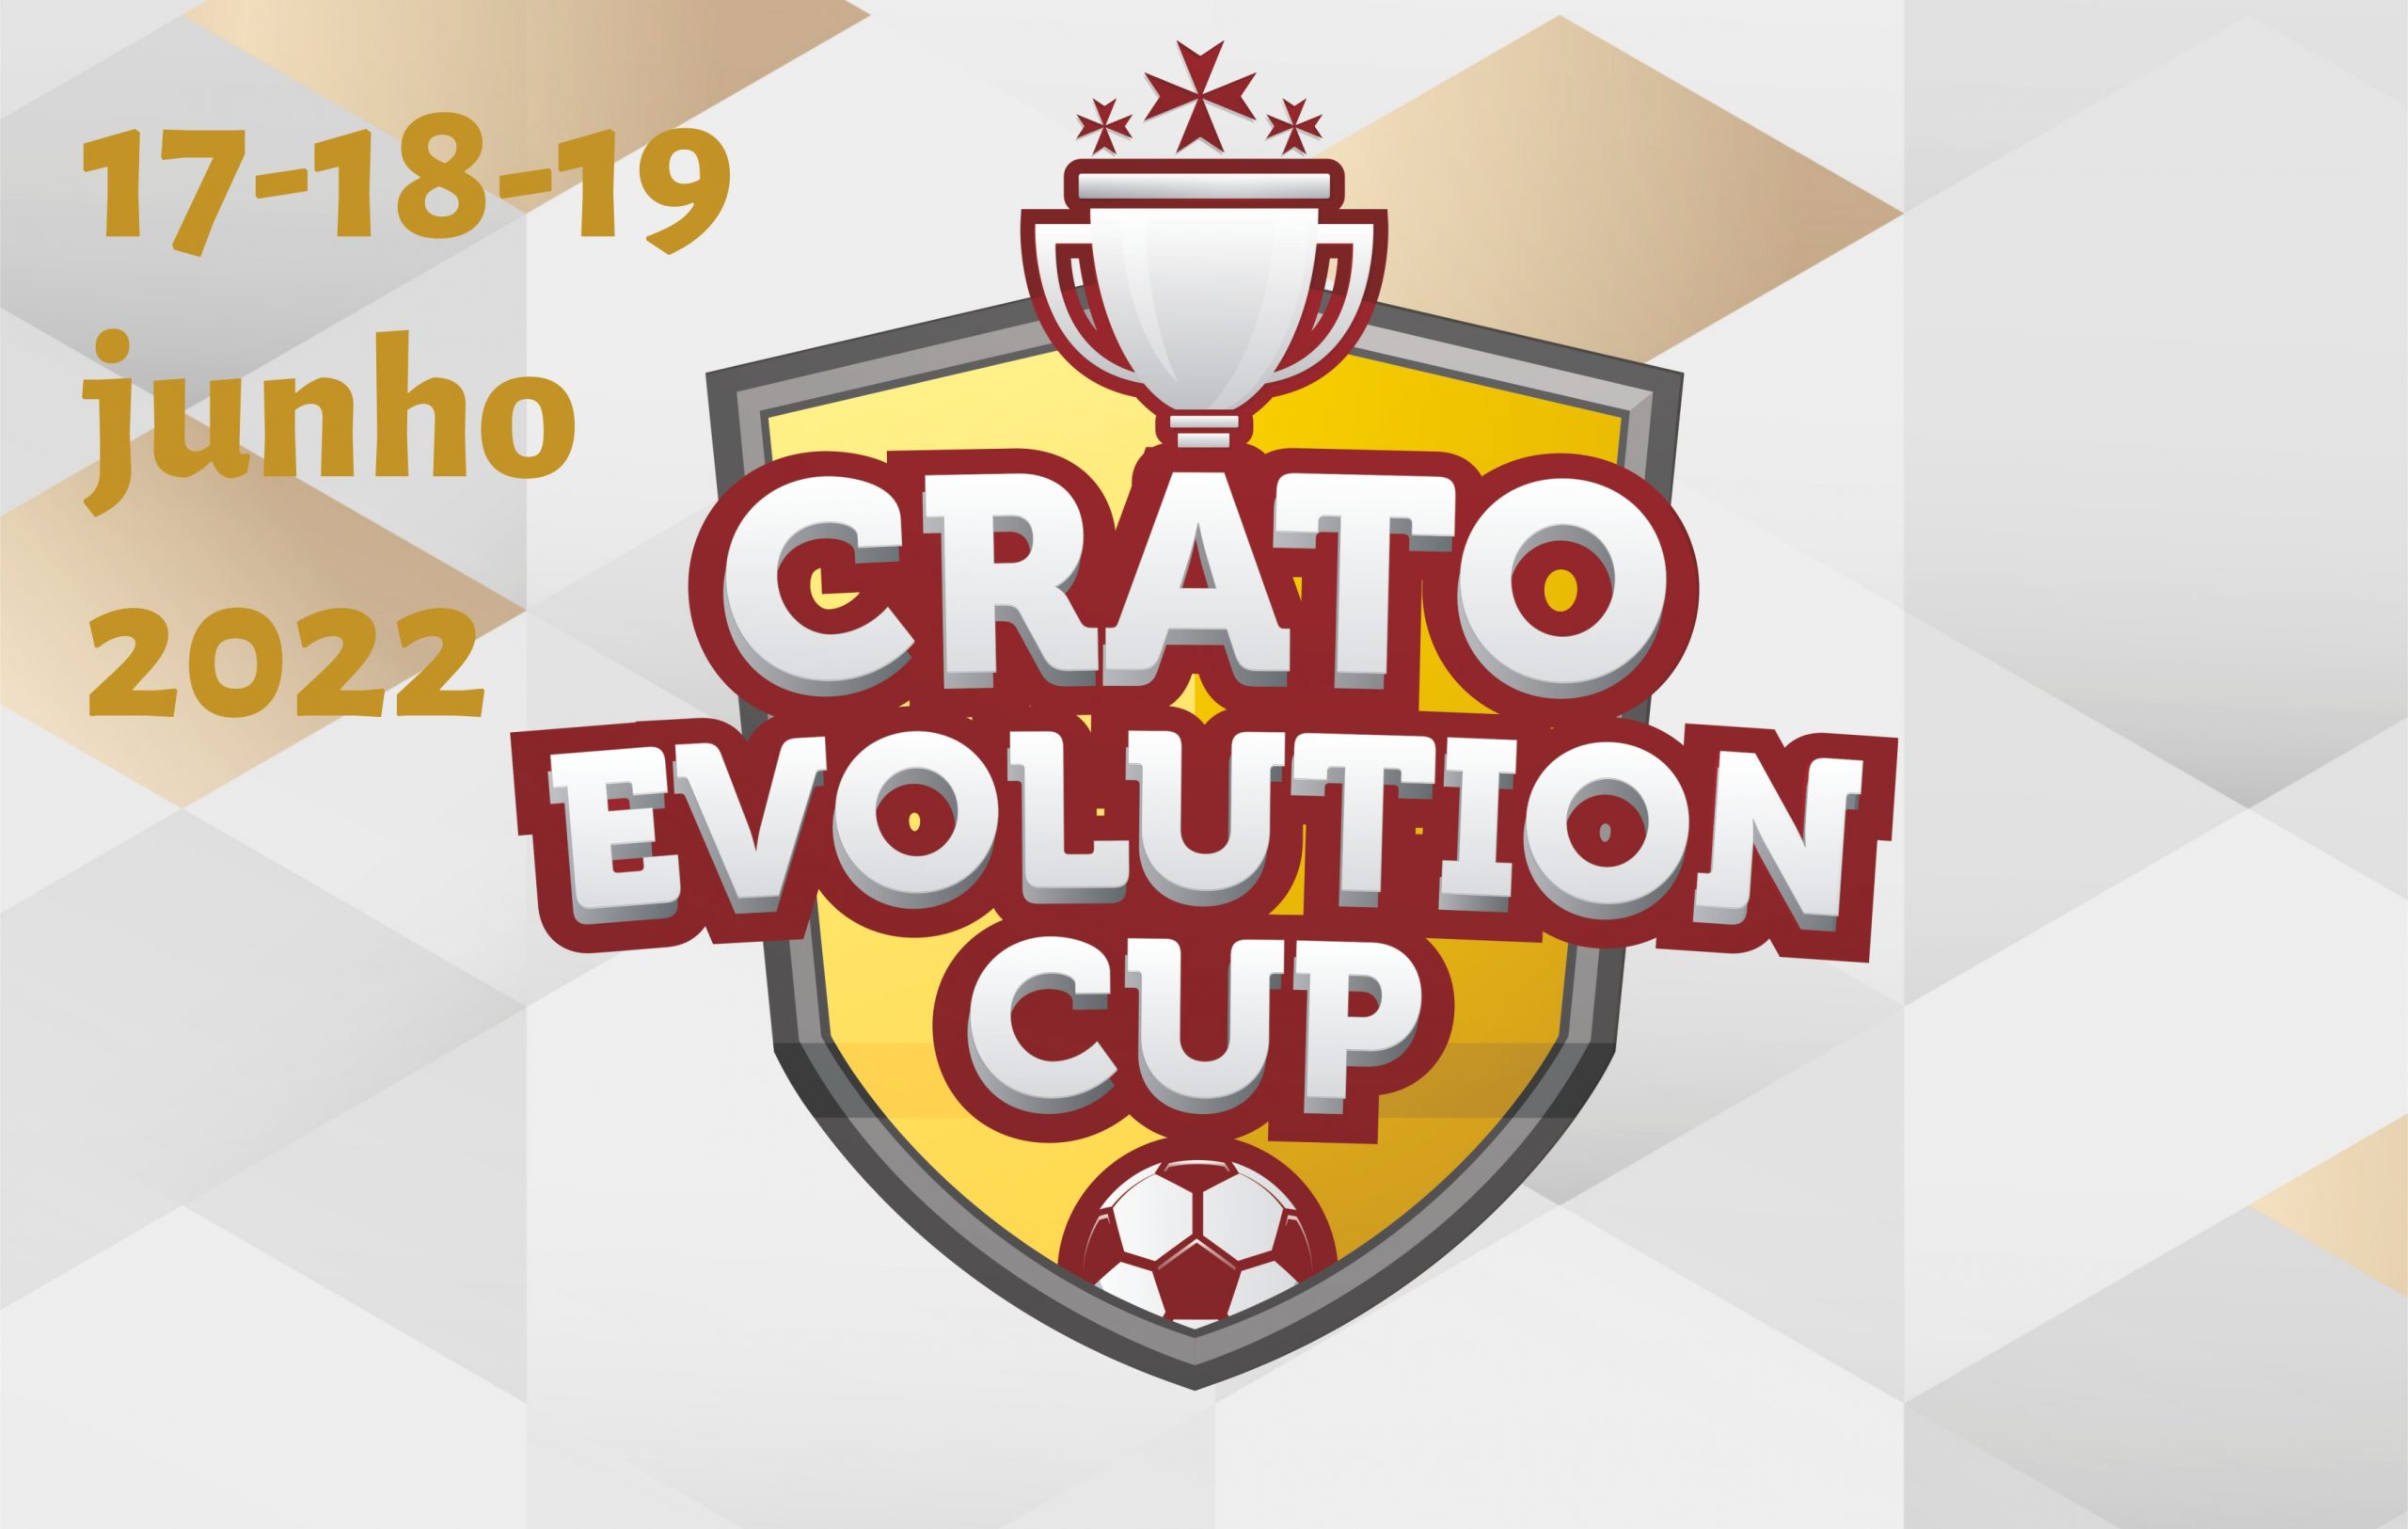 Crato Evolution Cup